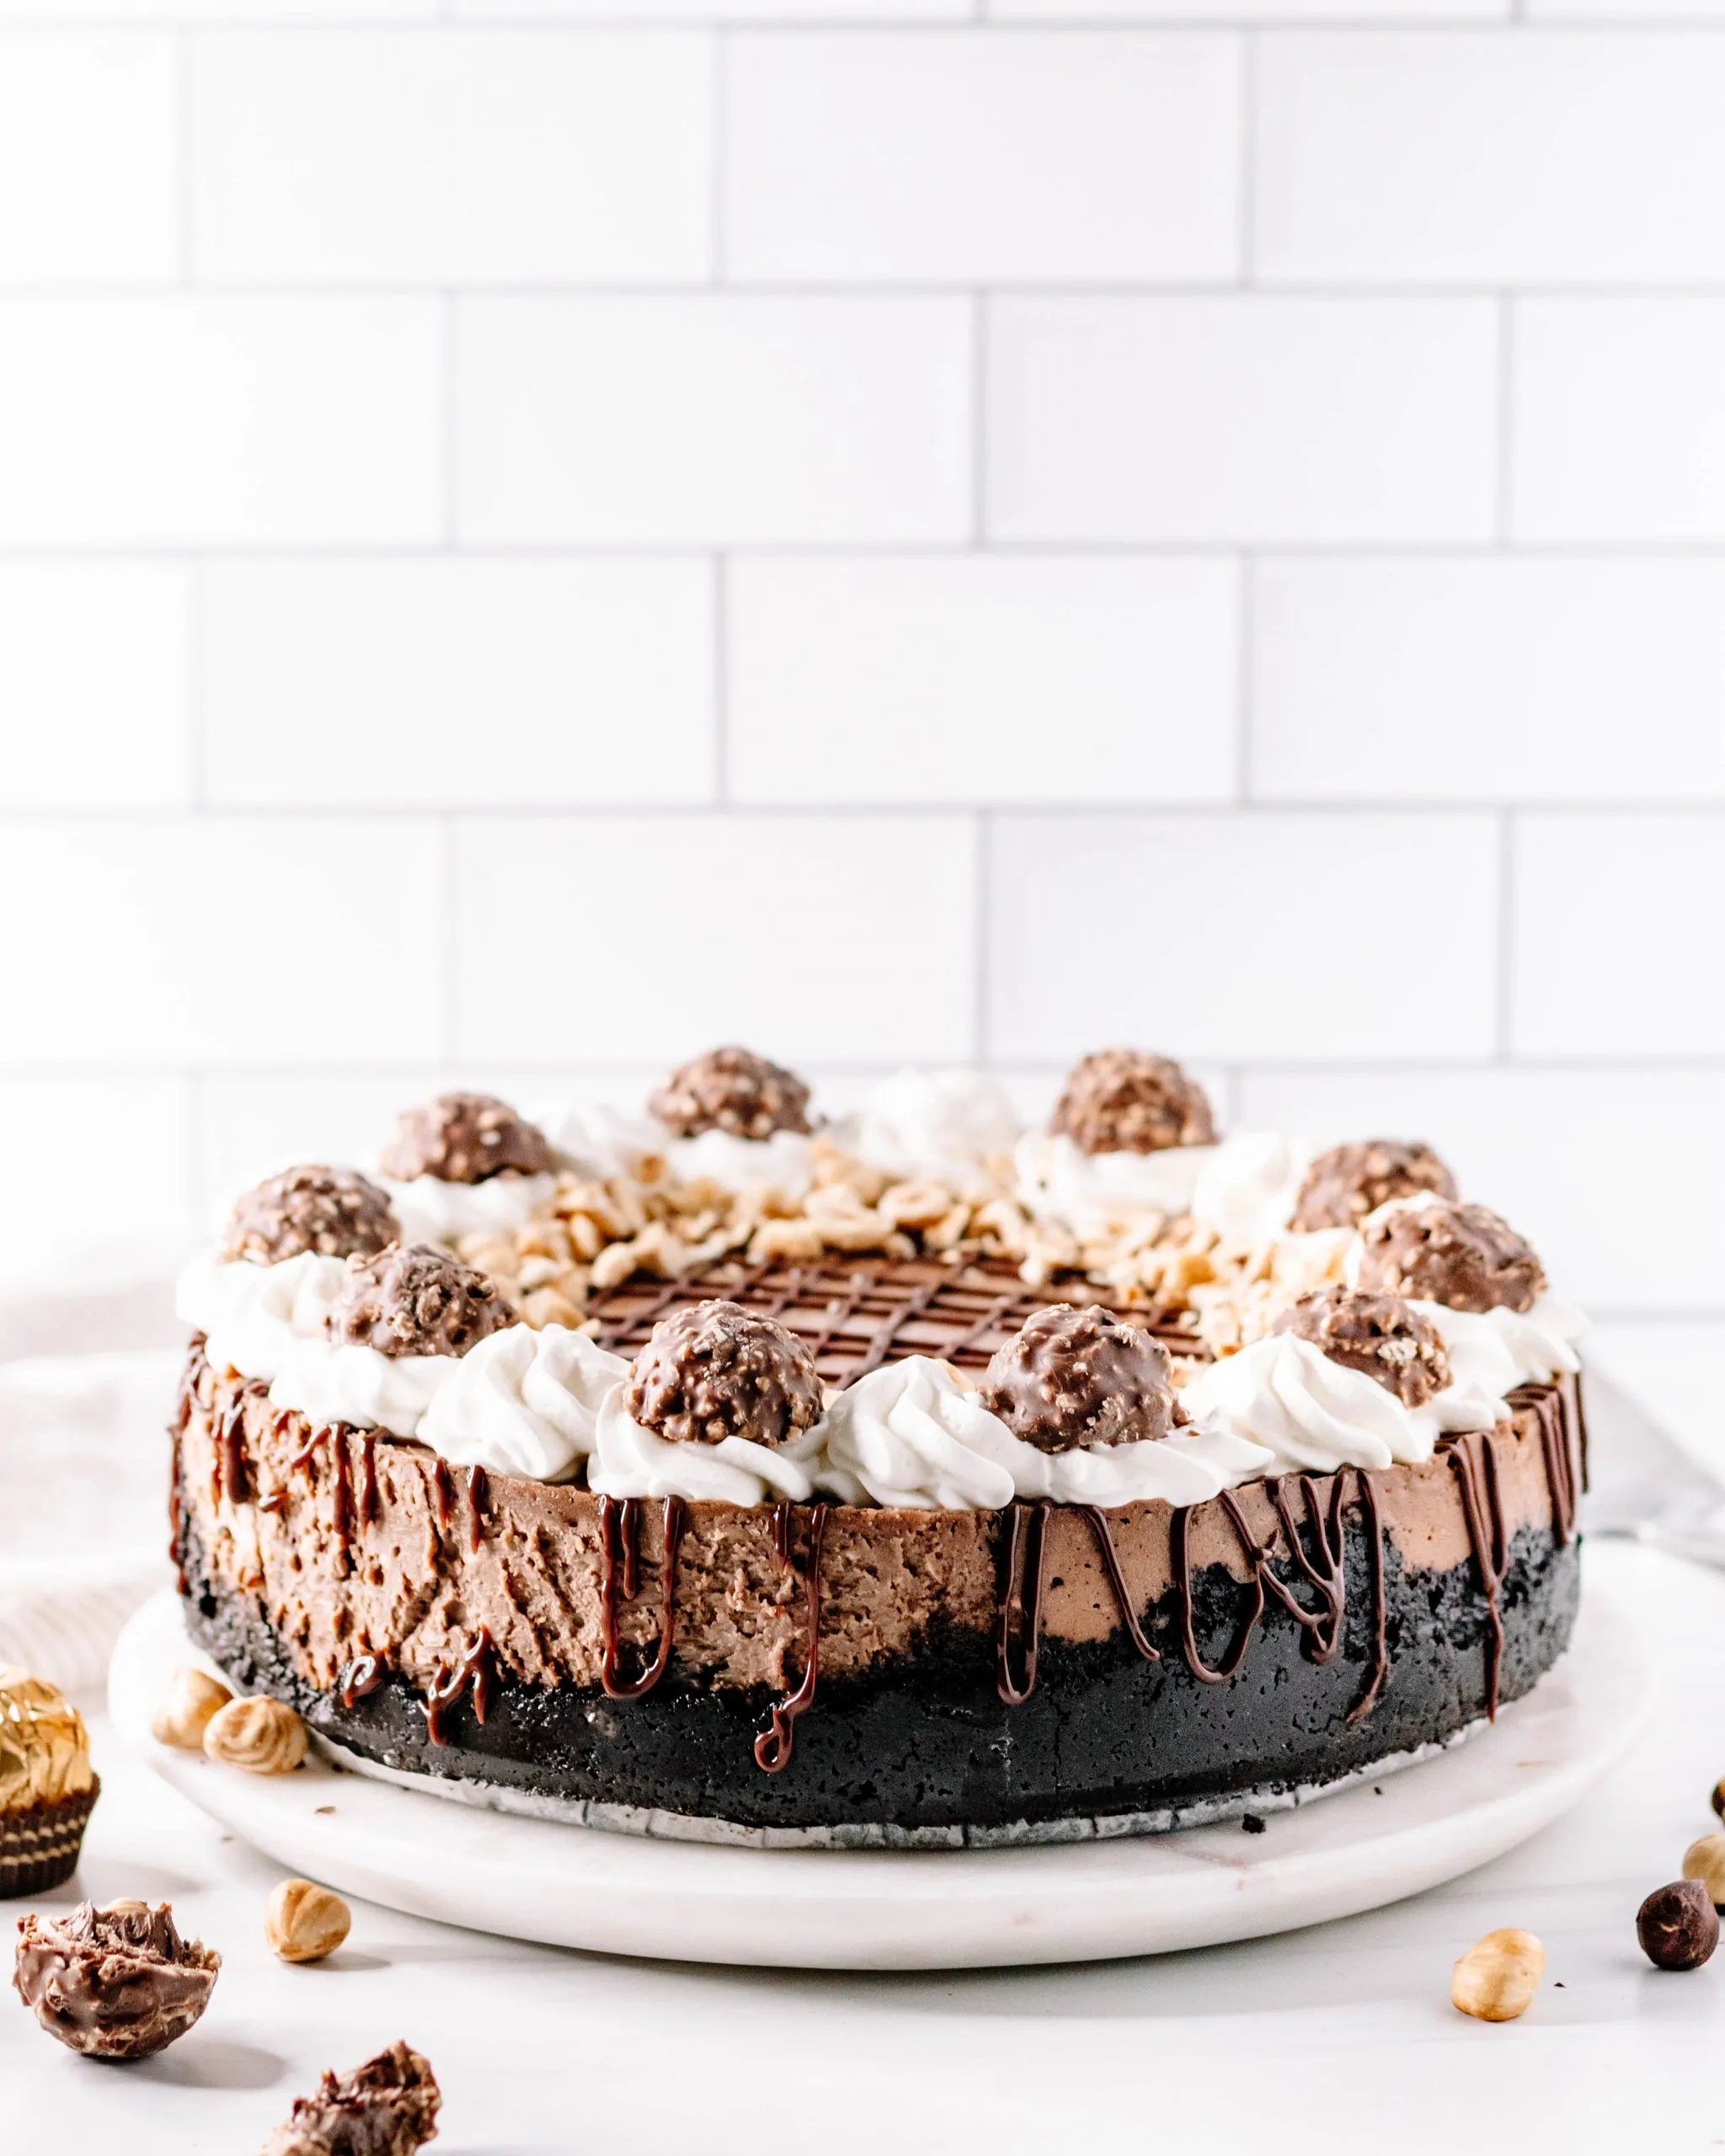 https://goodiegodmother.com/wp-content/uploads/2021/01/chocolate-hazelnut-cheesecake-recipe-3-scaled.jpg.webp